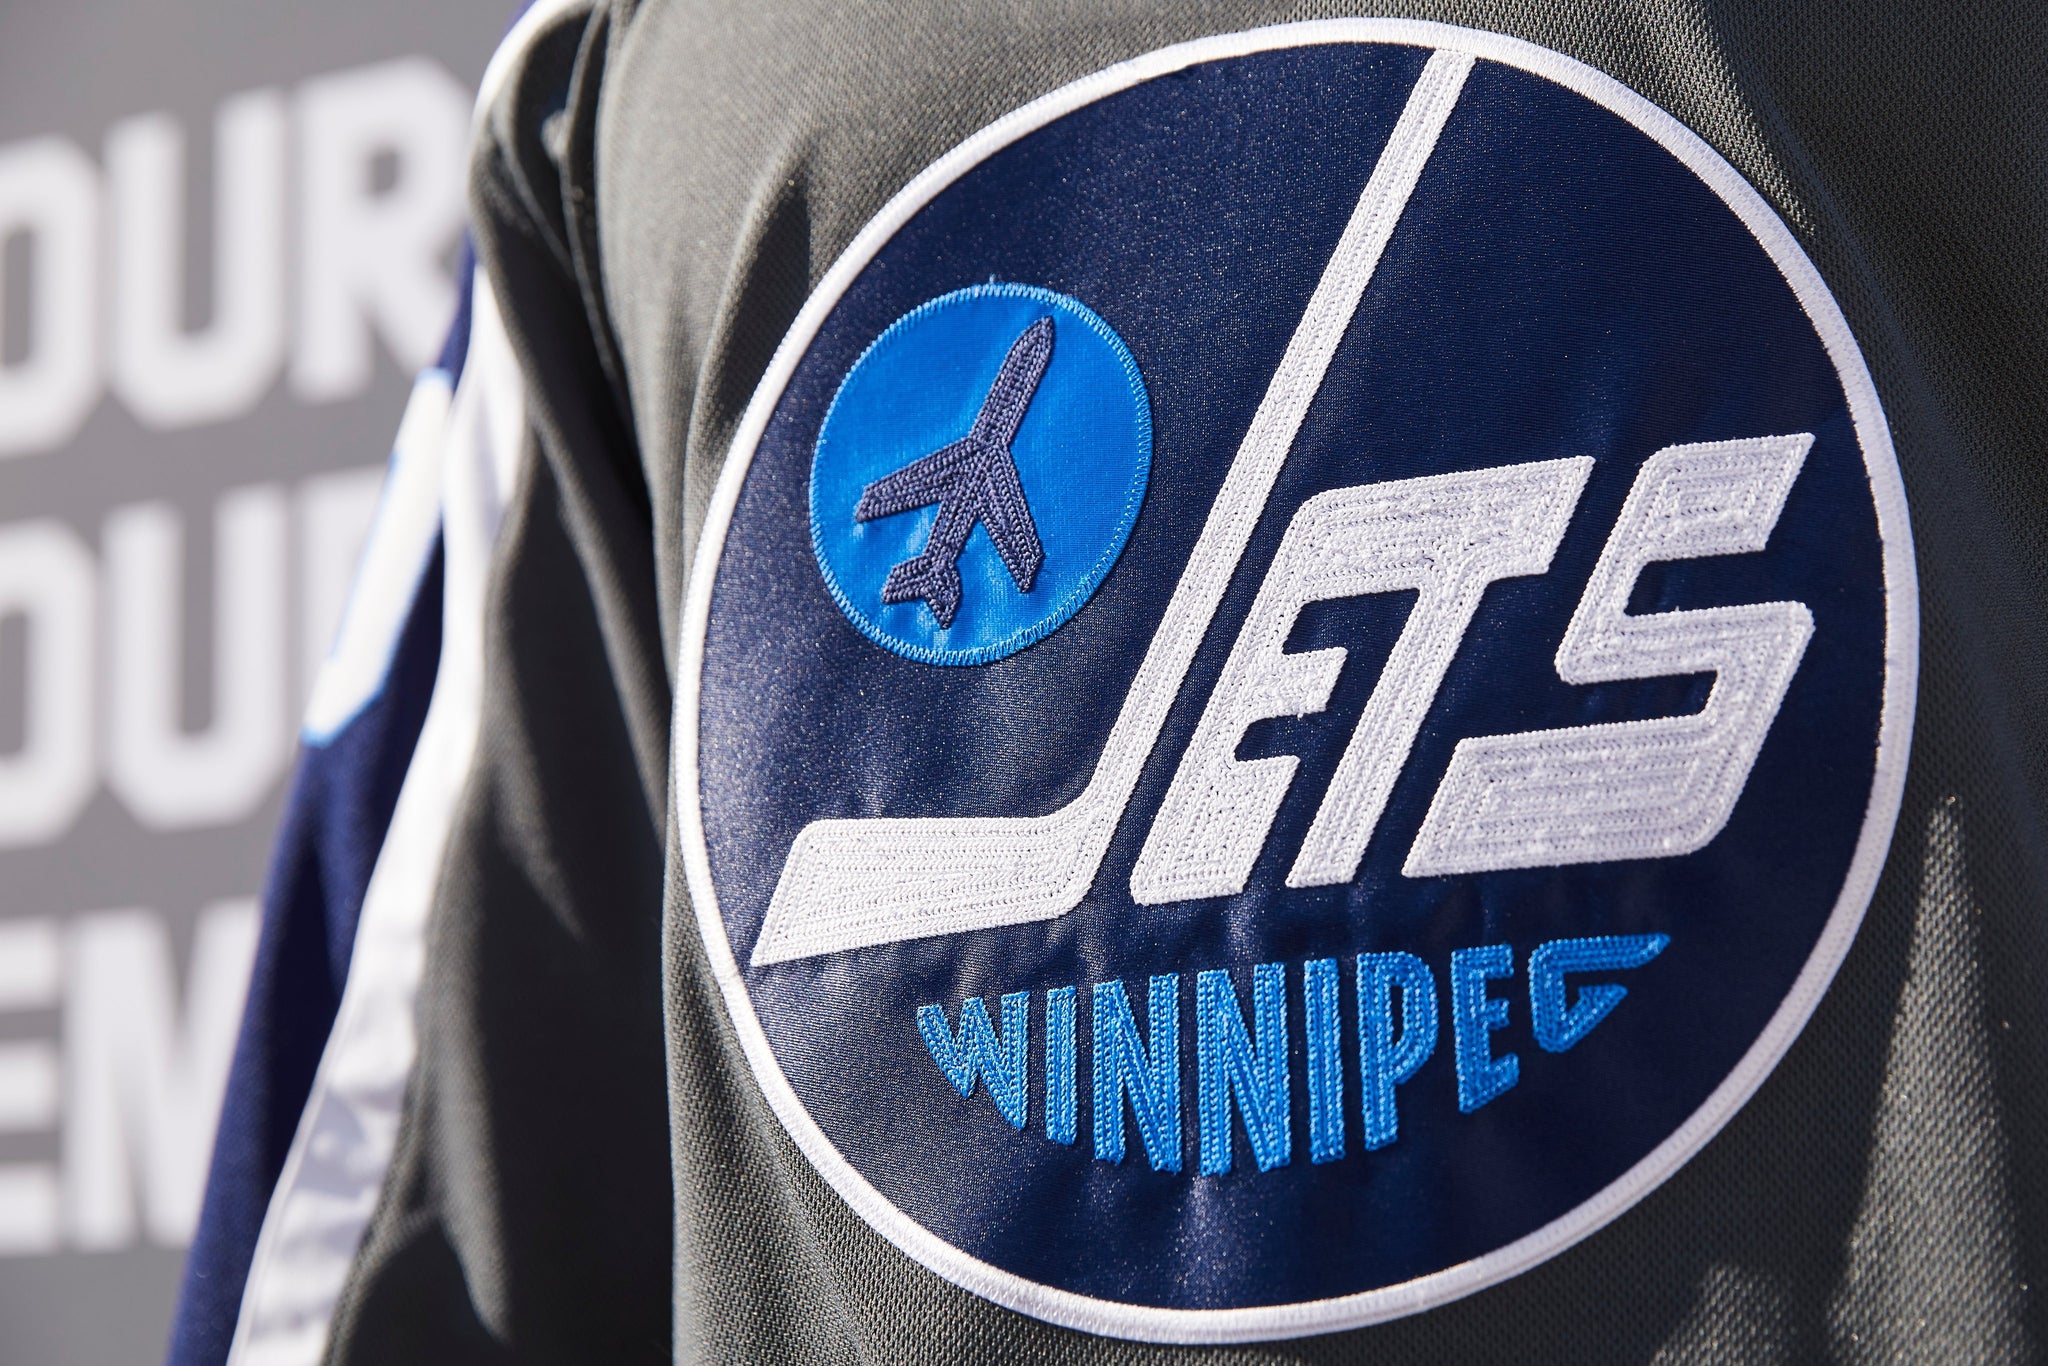 Pánské Dresy Winnipeg Jets Customized 2021 Reverse Retro Černá Authentic